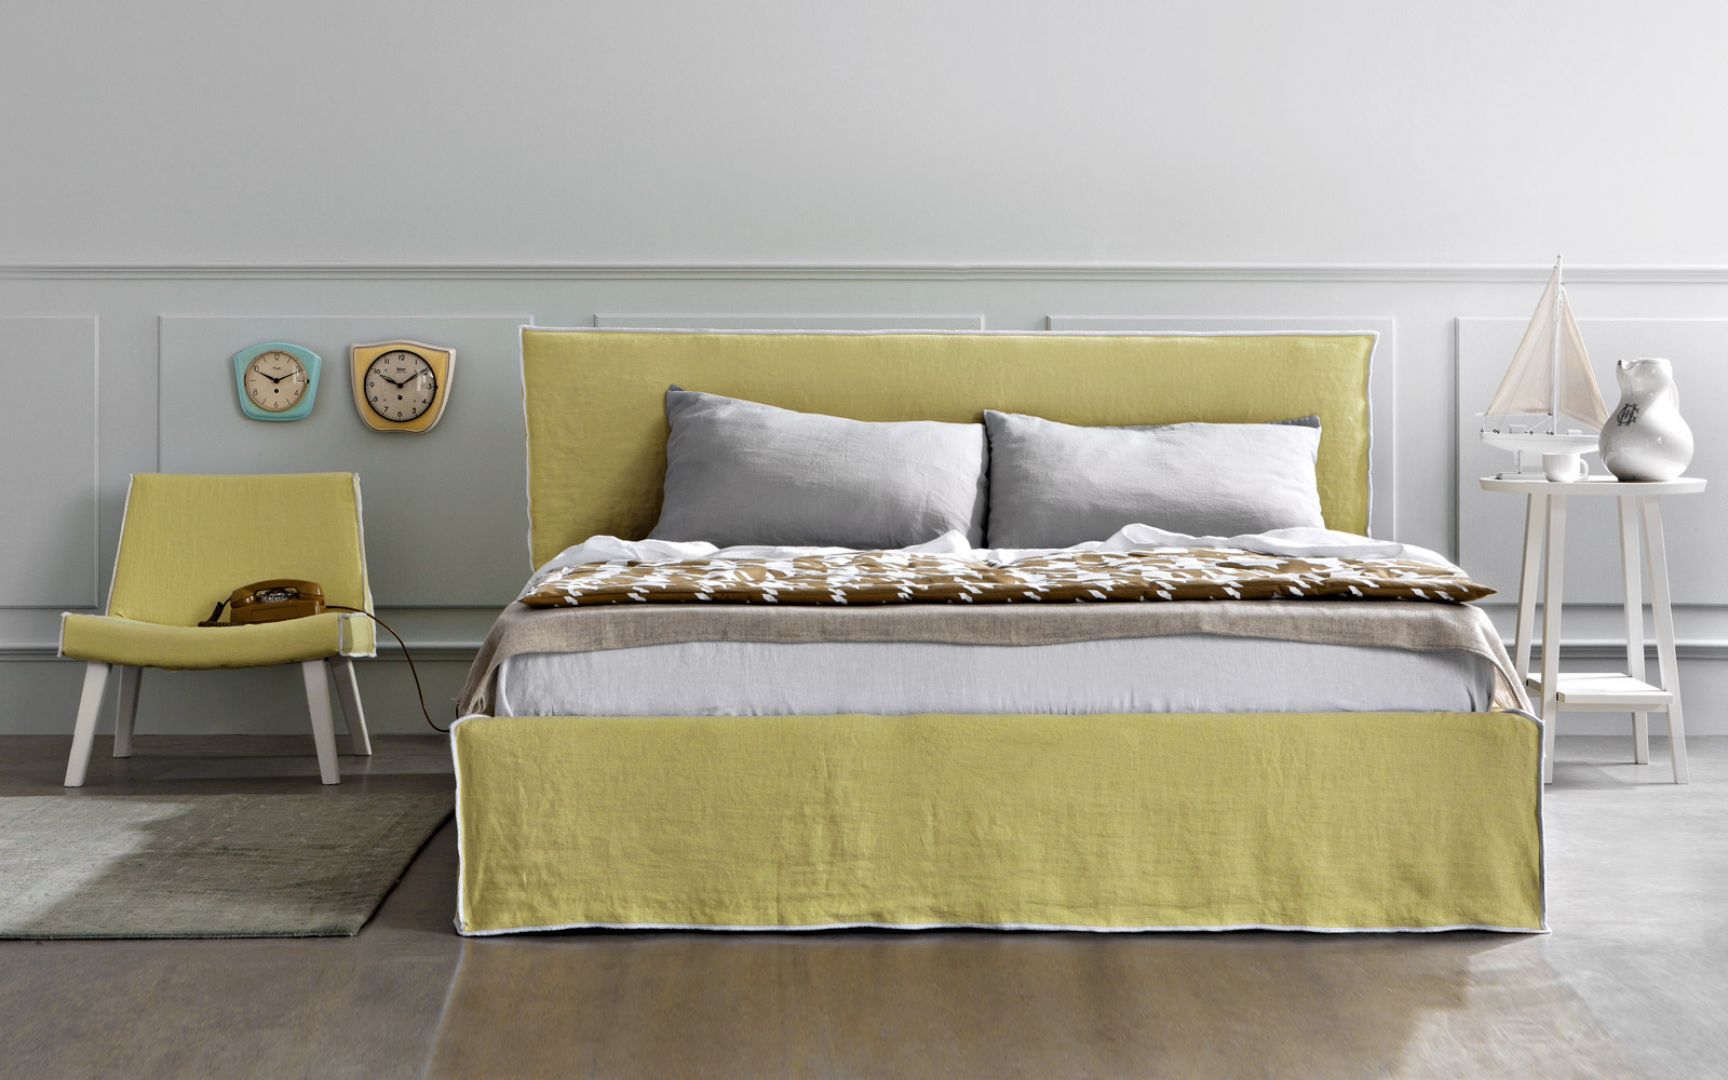 Dla ożywienia wnętrza sypialni, można wybrać model łóżka w nasyconym, mocnym kolorze. Fot. Letti&Co